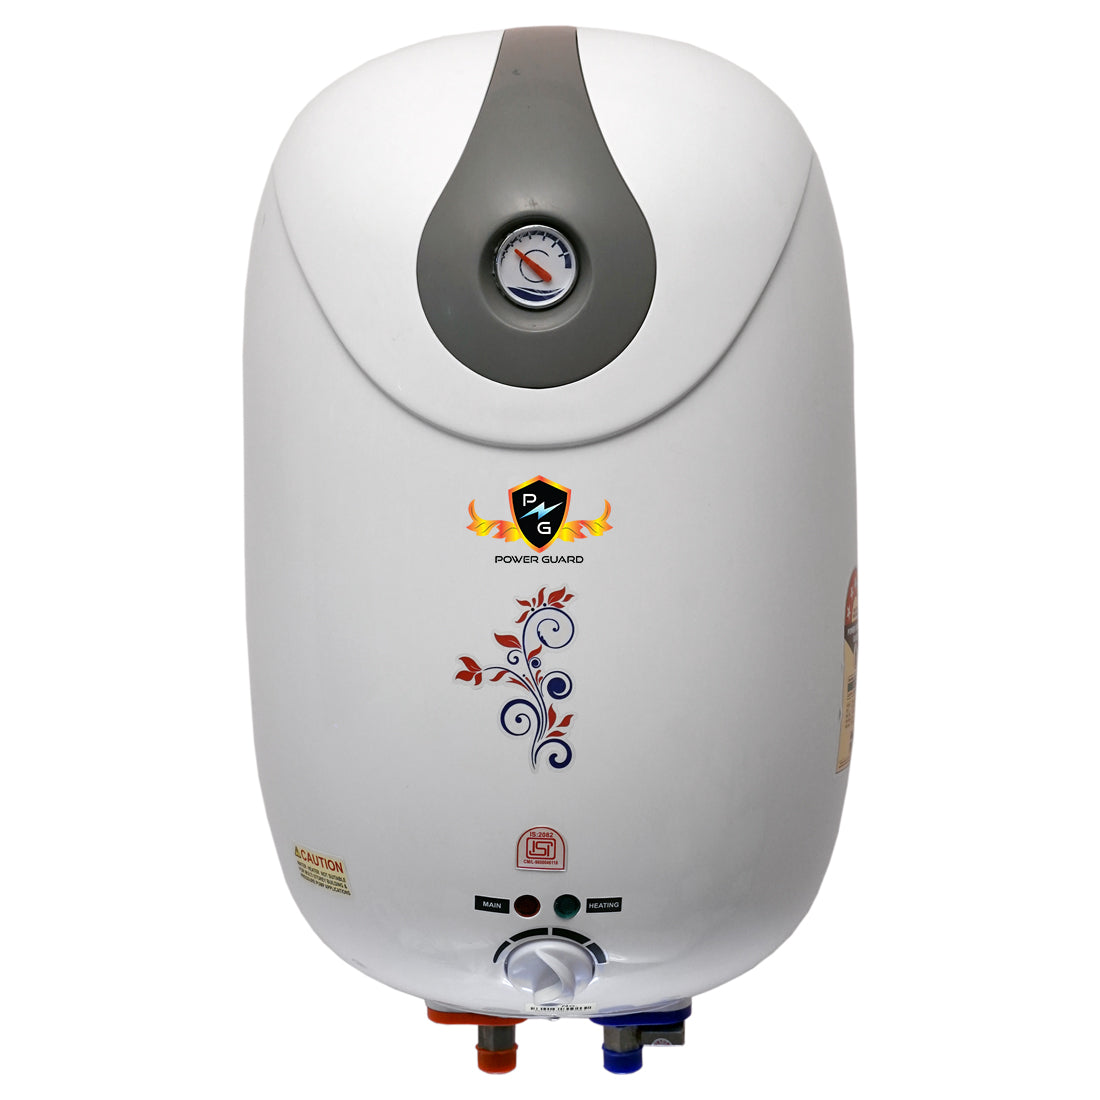 Water Geyser : Power Guard 10L Storage Water Heater Geyser (White, PG-ABS-10)